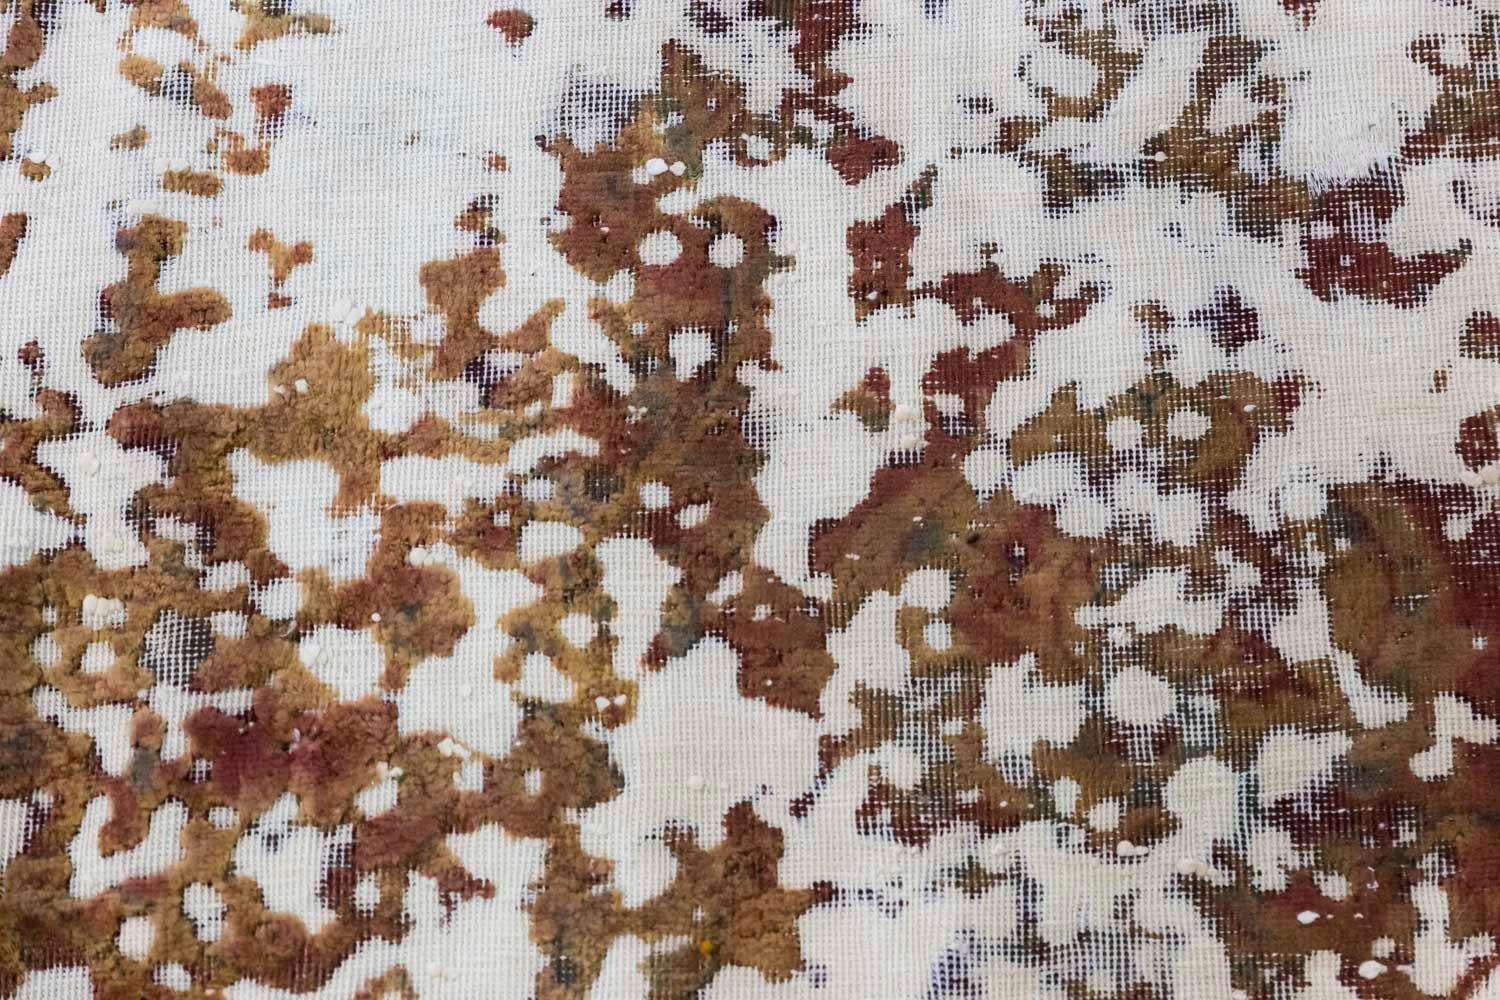 Ancien tapis persan rectangulaire dans les tons marron et rouge avec des motifs stylisés sur les côtés et un fond crème.
Texture de la moquette obtenue grâce au travail contemporain d'un artiste par tonte, grattage et teinture.

Pièce unique.